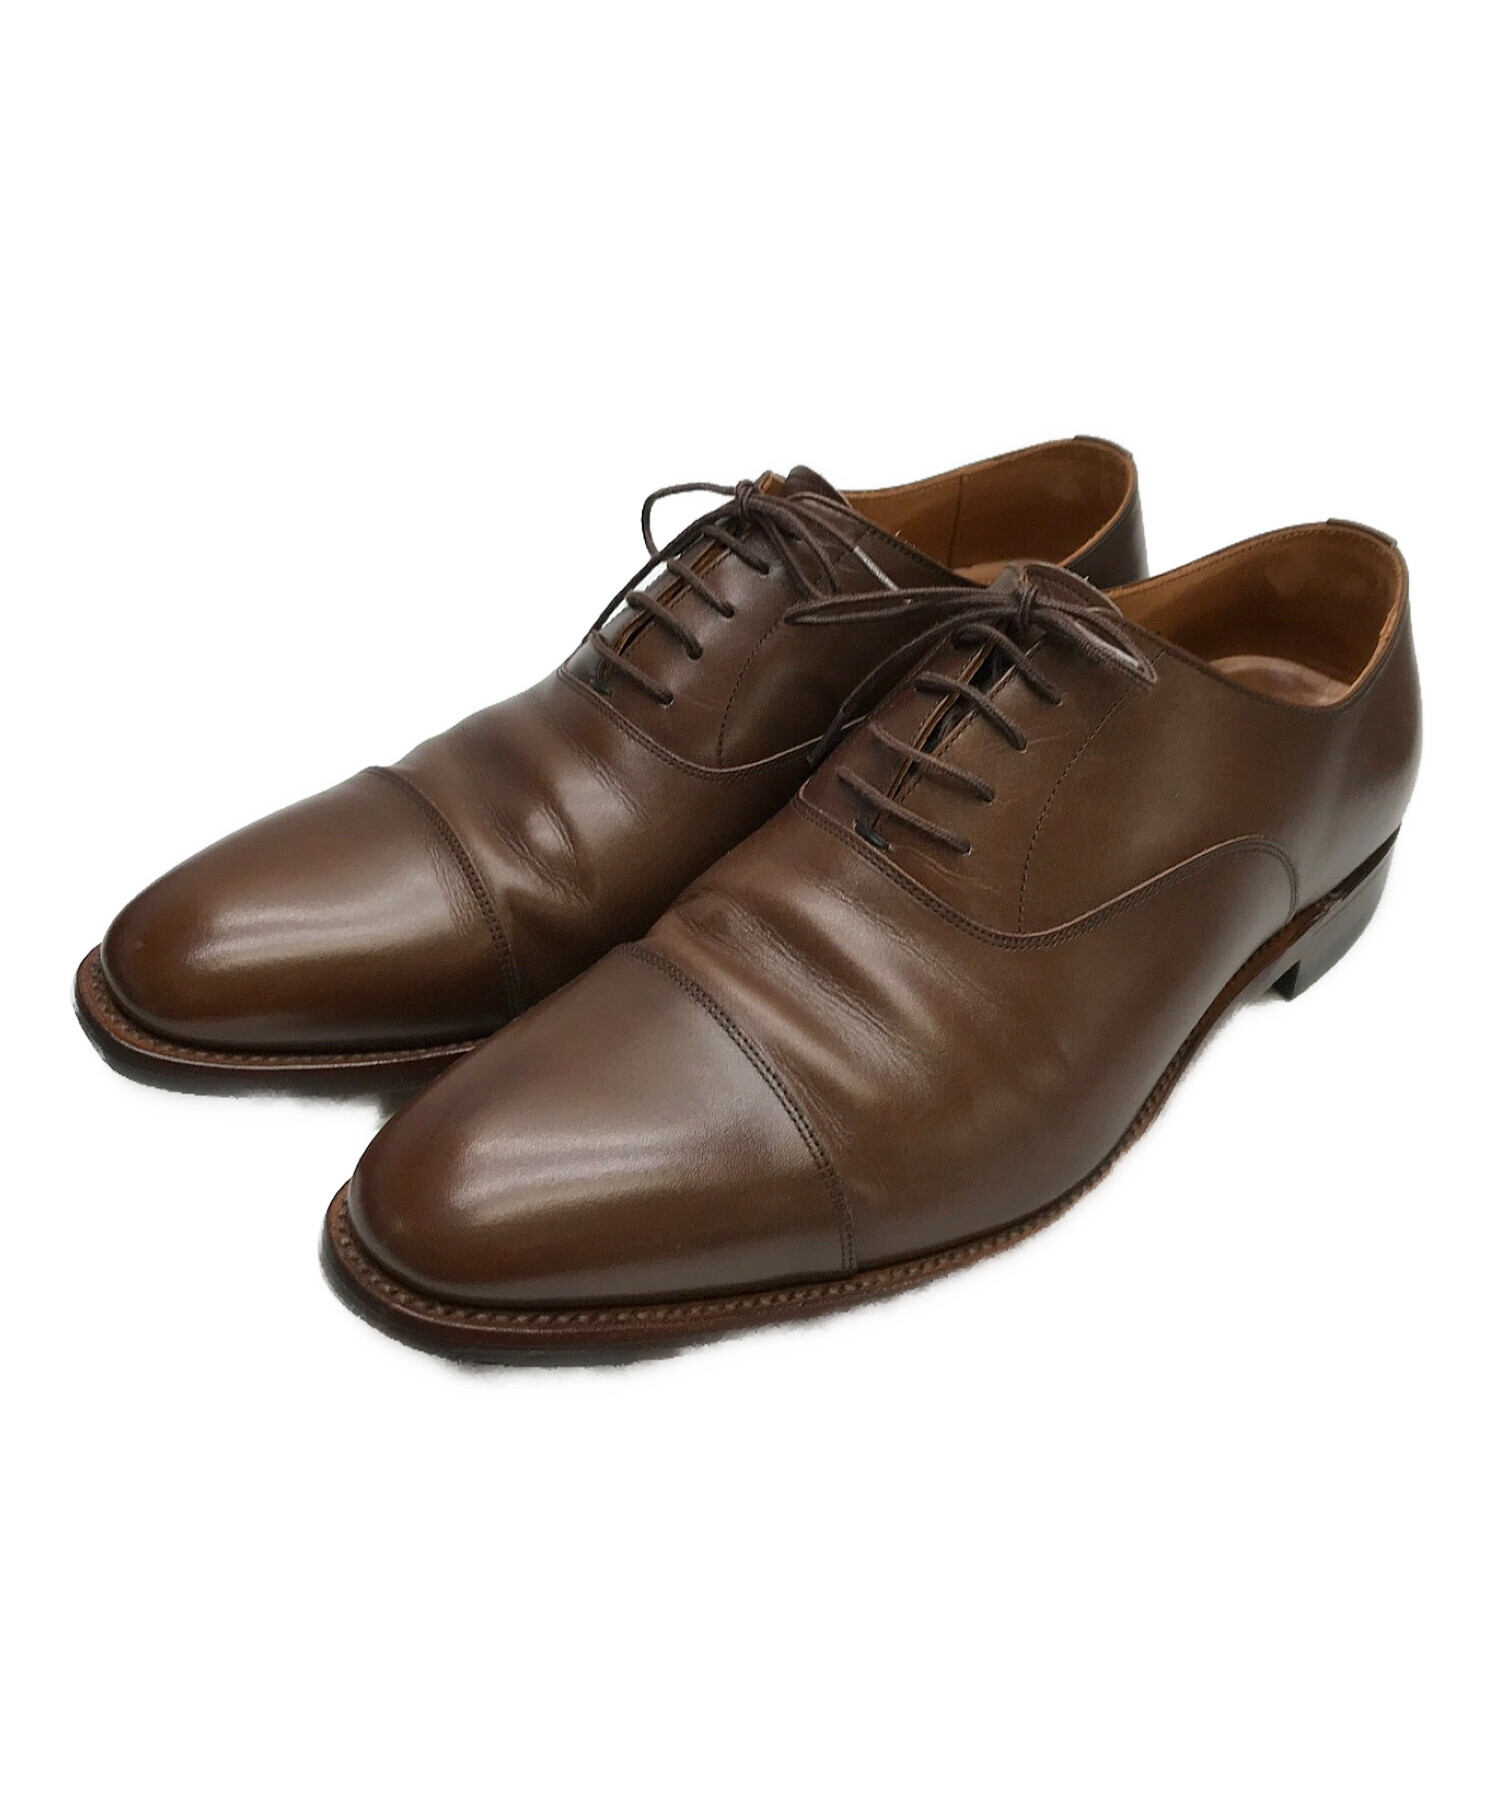 SCOTCH GRAIN 革靴 ストレートチップ - ドレス/ビジネス